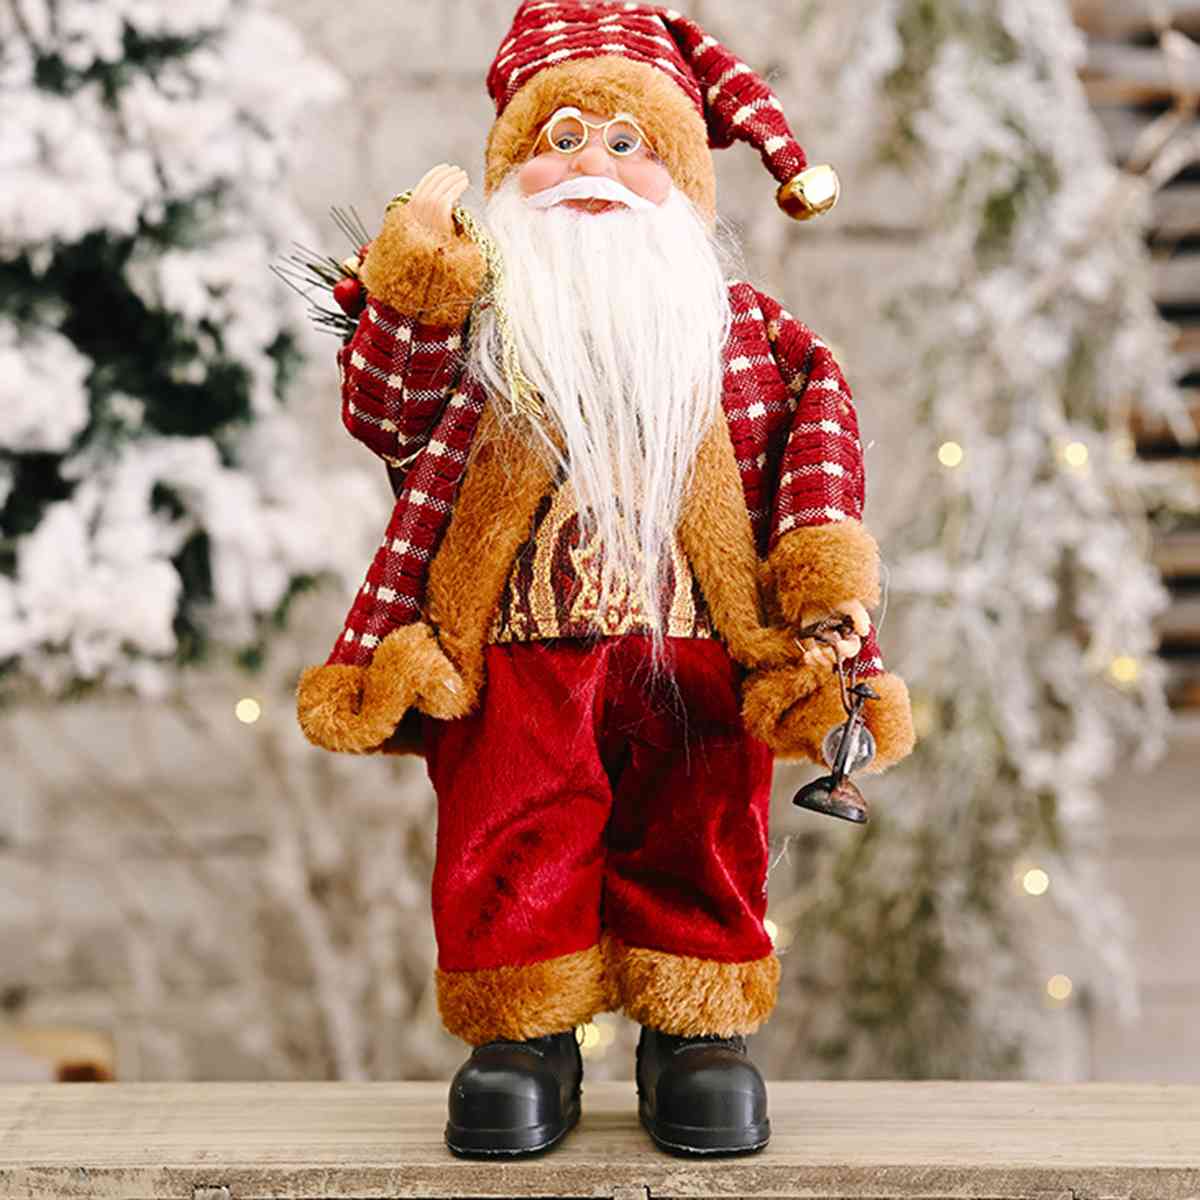 Santa Claus Decor Gnome 11.8" H x 7.9" W